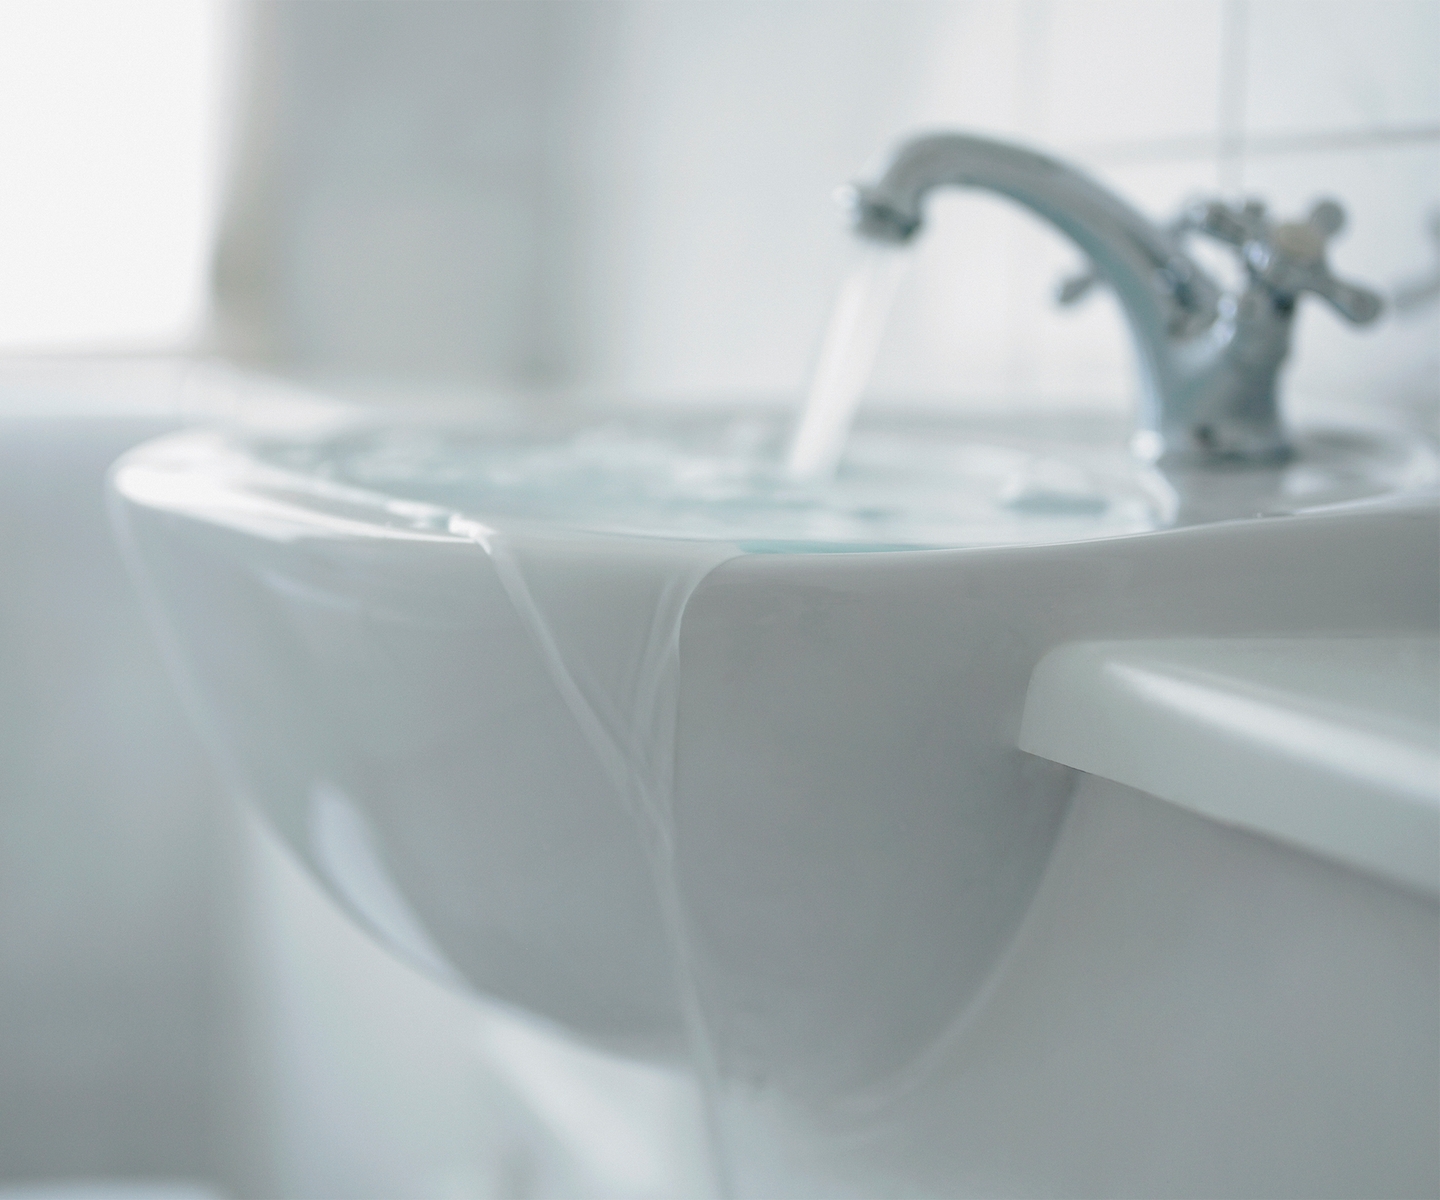 Bathroom sink causes residential water damage 